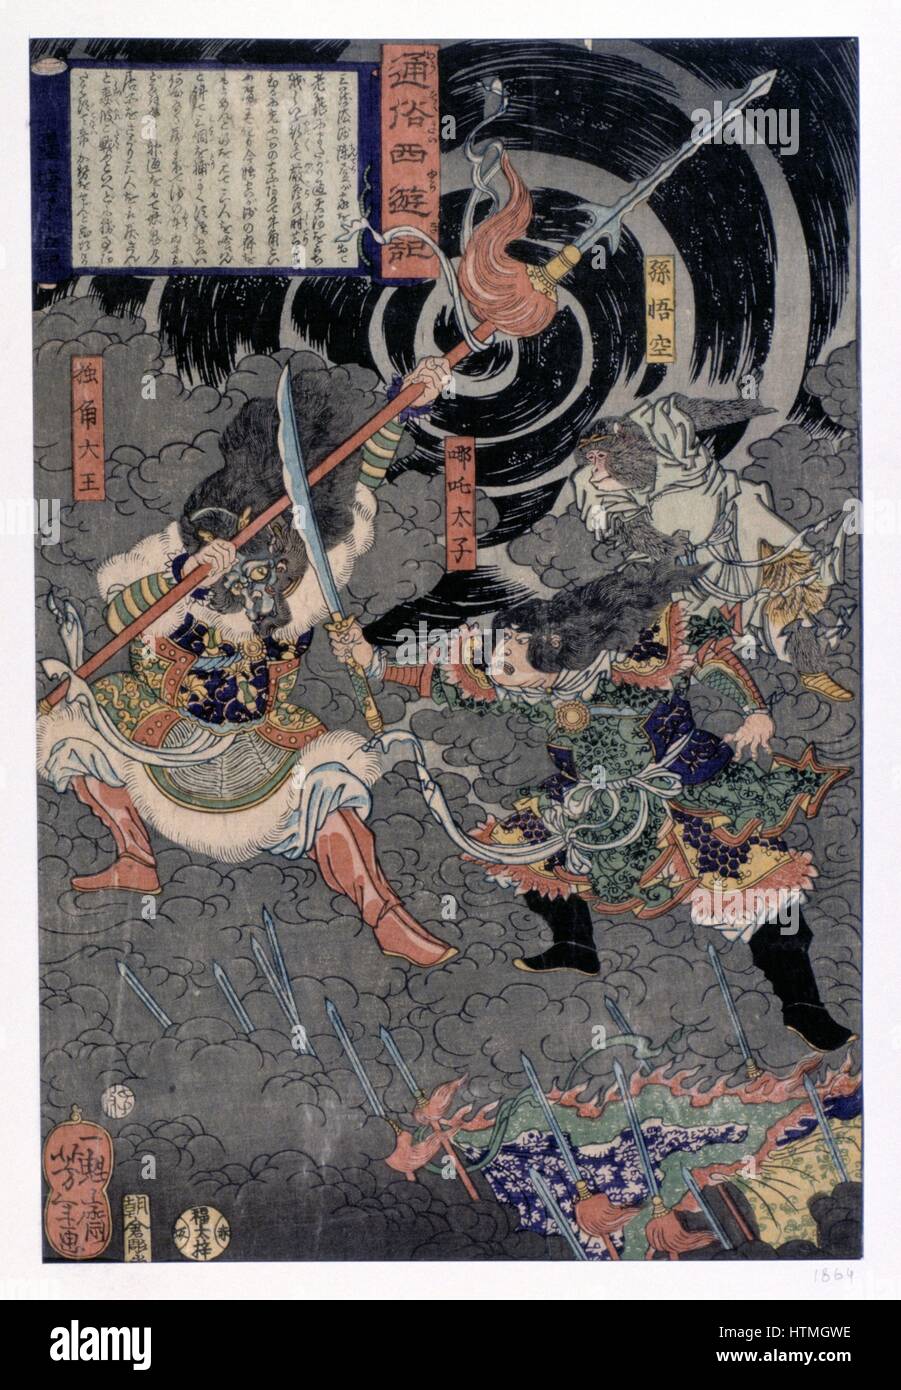 Samurai Warrior dans la bataille contre les singes.19e siècle gravure sur bois couleur japonais. Banque D'Images